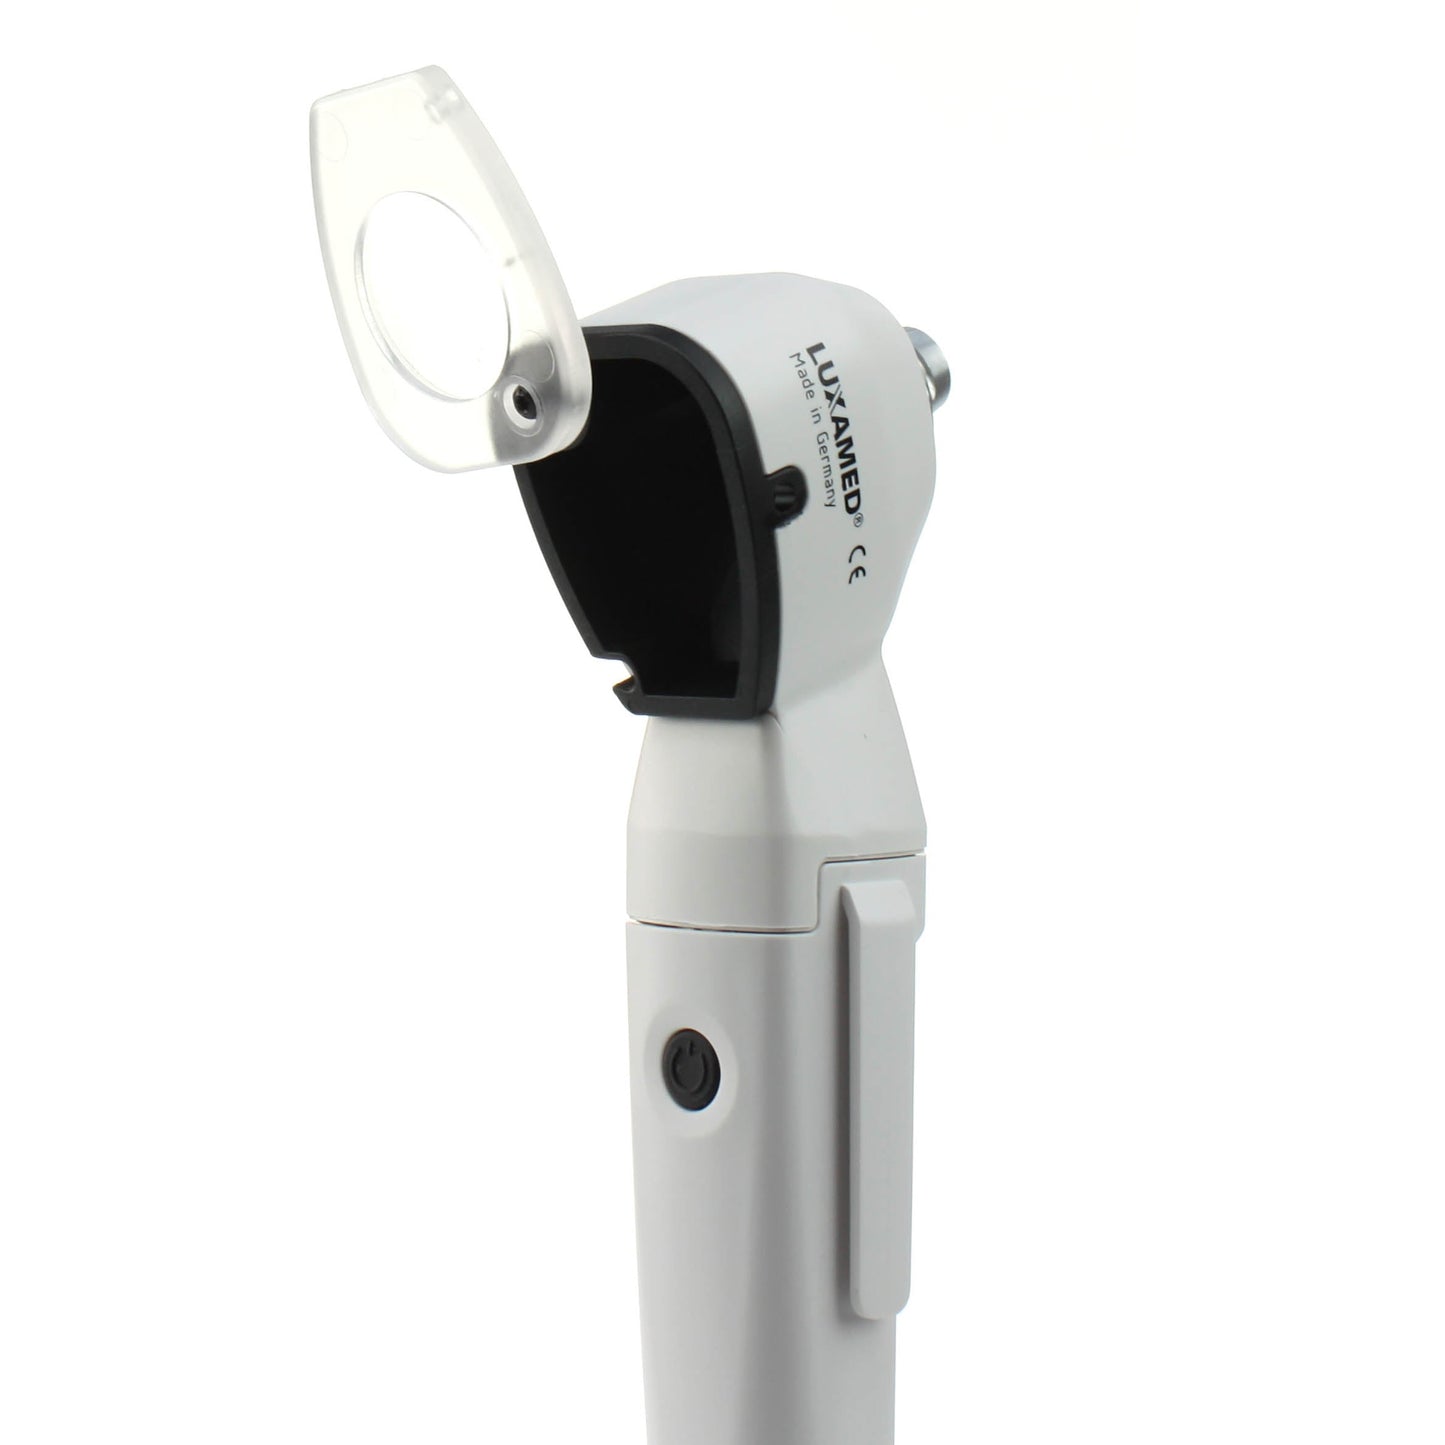 Luxamed Auris LED Otoscope 2.5v - White